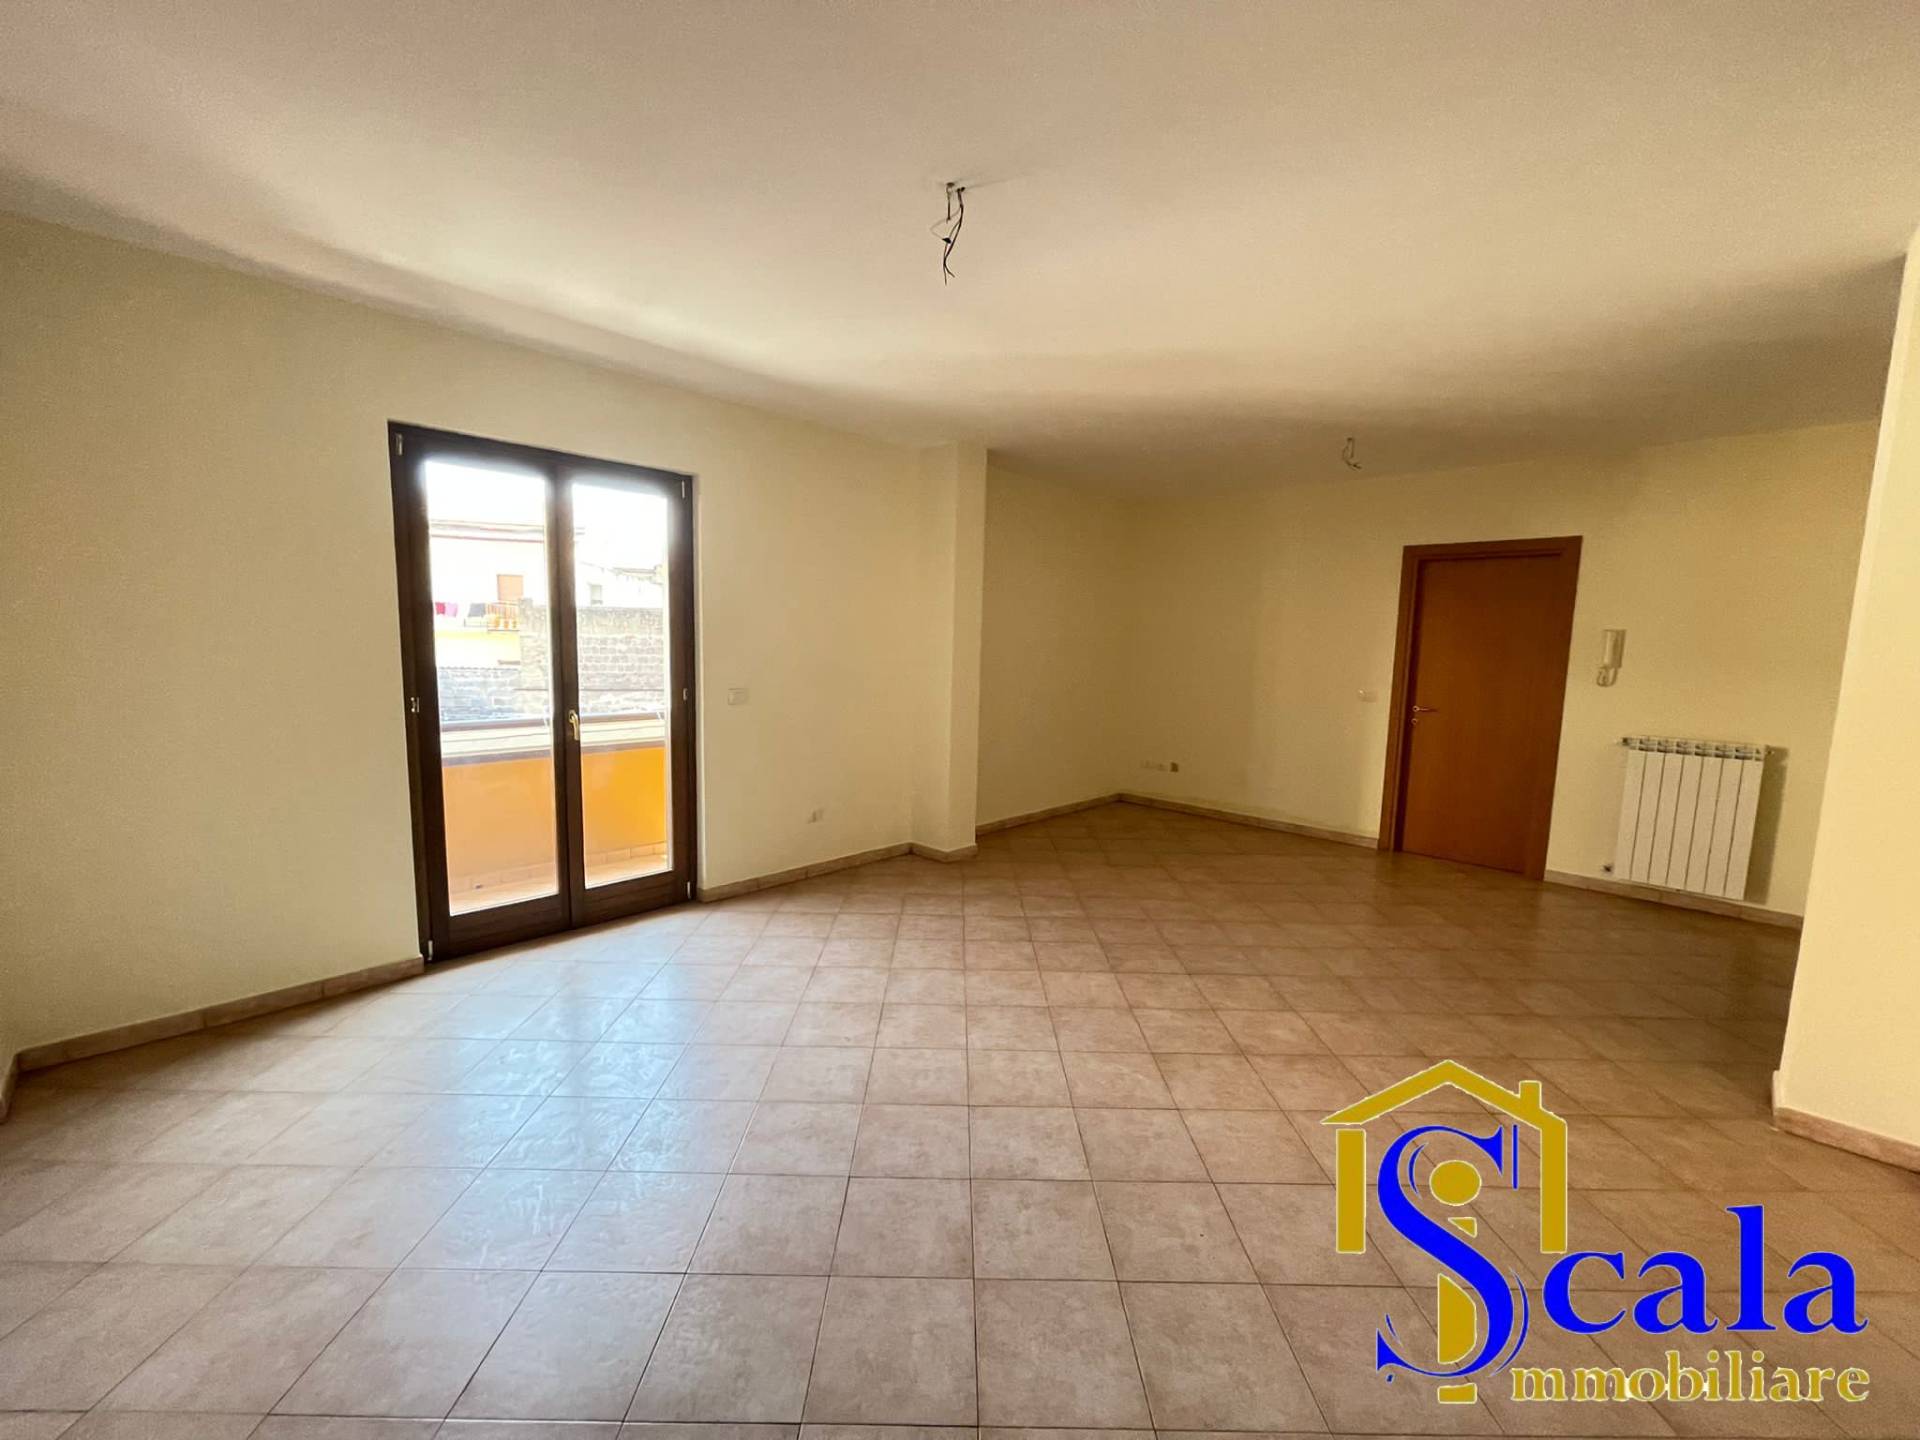 Appartamento in vendita a Vitulazio, 3 locali, prezzo € 95.000 | CambioCasa.it